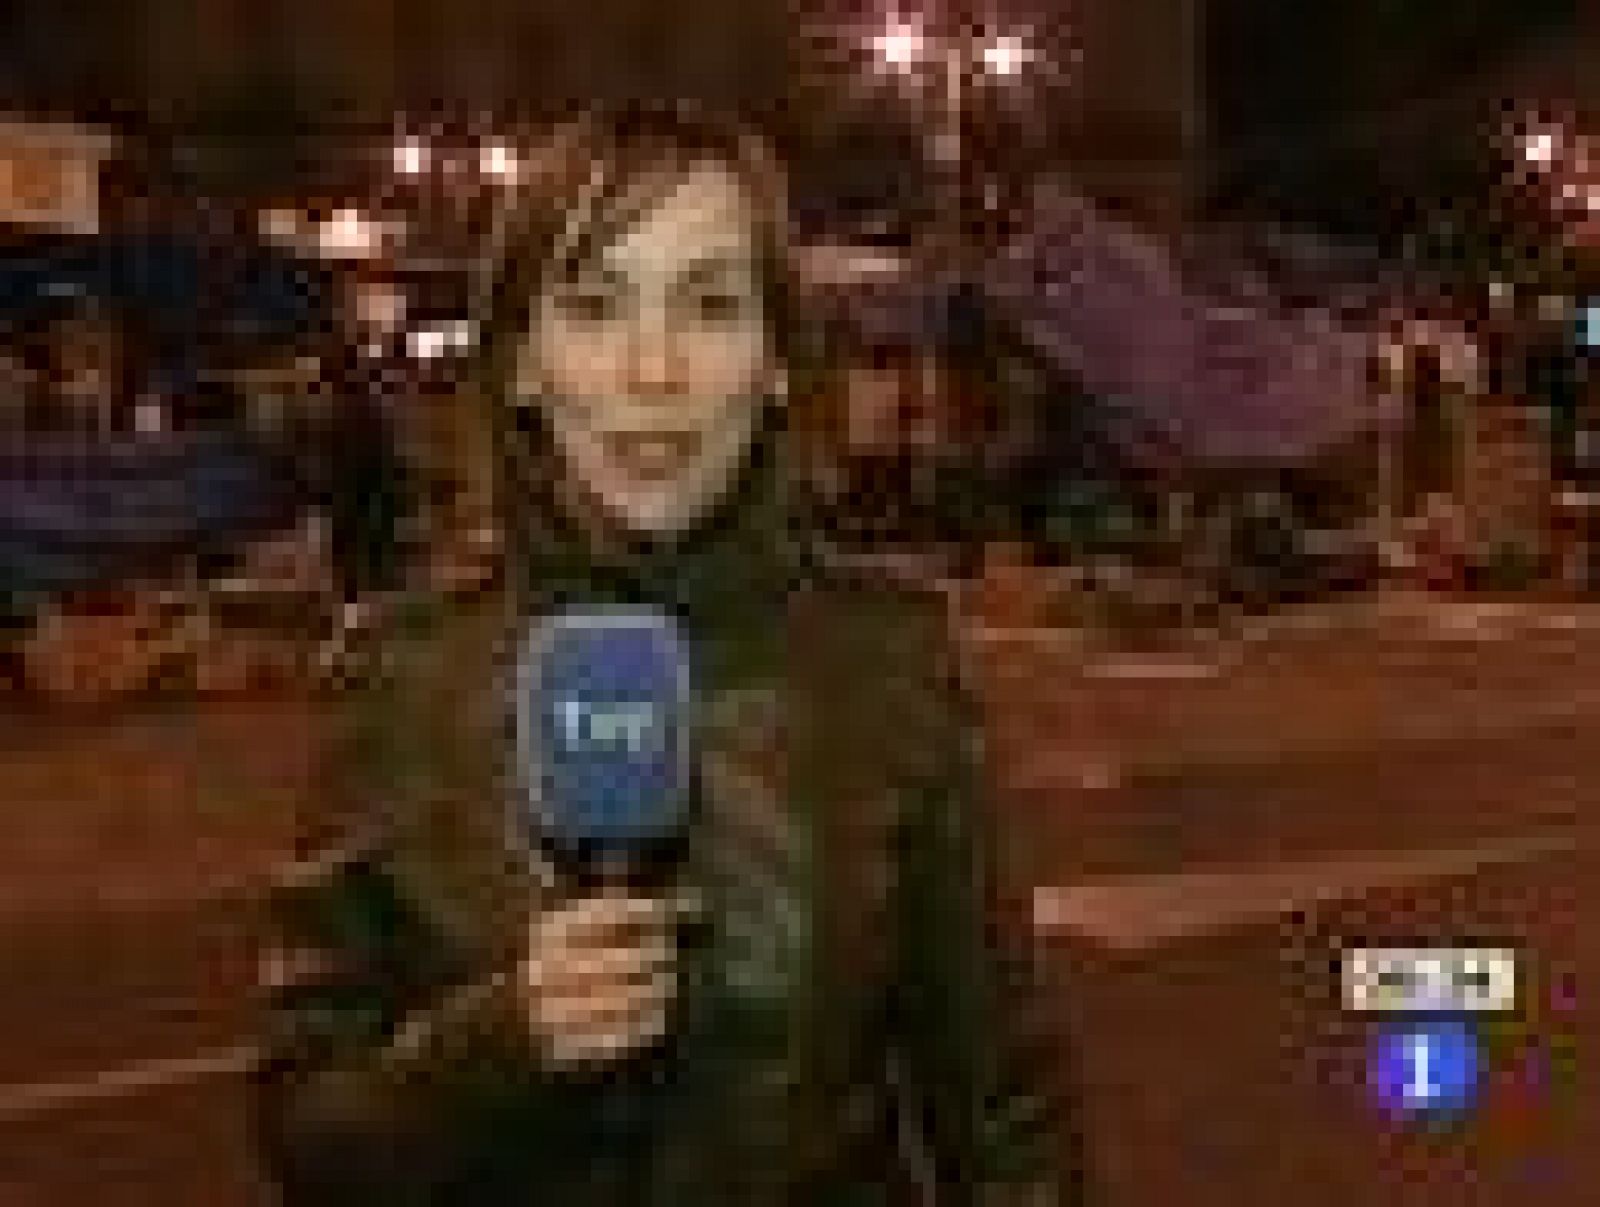  Más de mil personas han vuelto a acampar durante la madrugada de este miércoles en la madrileña Puerta del Sol su protesta pacífica para pedir una "democracia real" y la mejora de las condiciones de vida. Las acampadas nocturnas empiezan a extenderse cada vez a más ciudades 